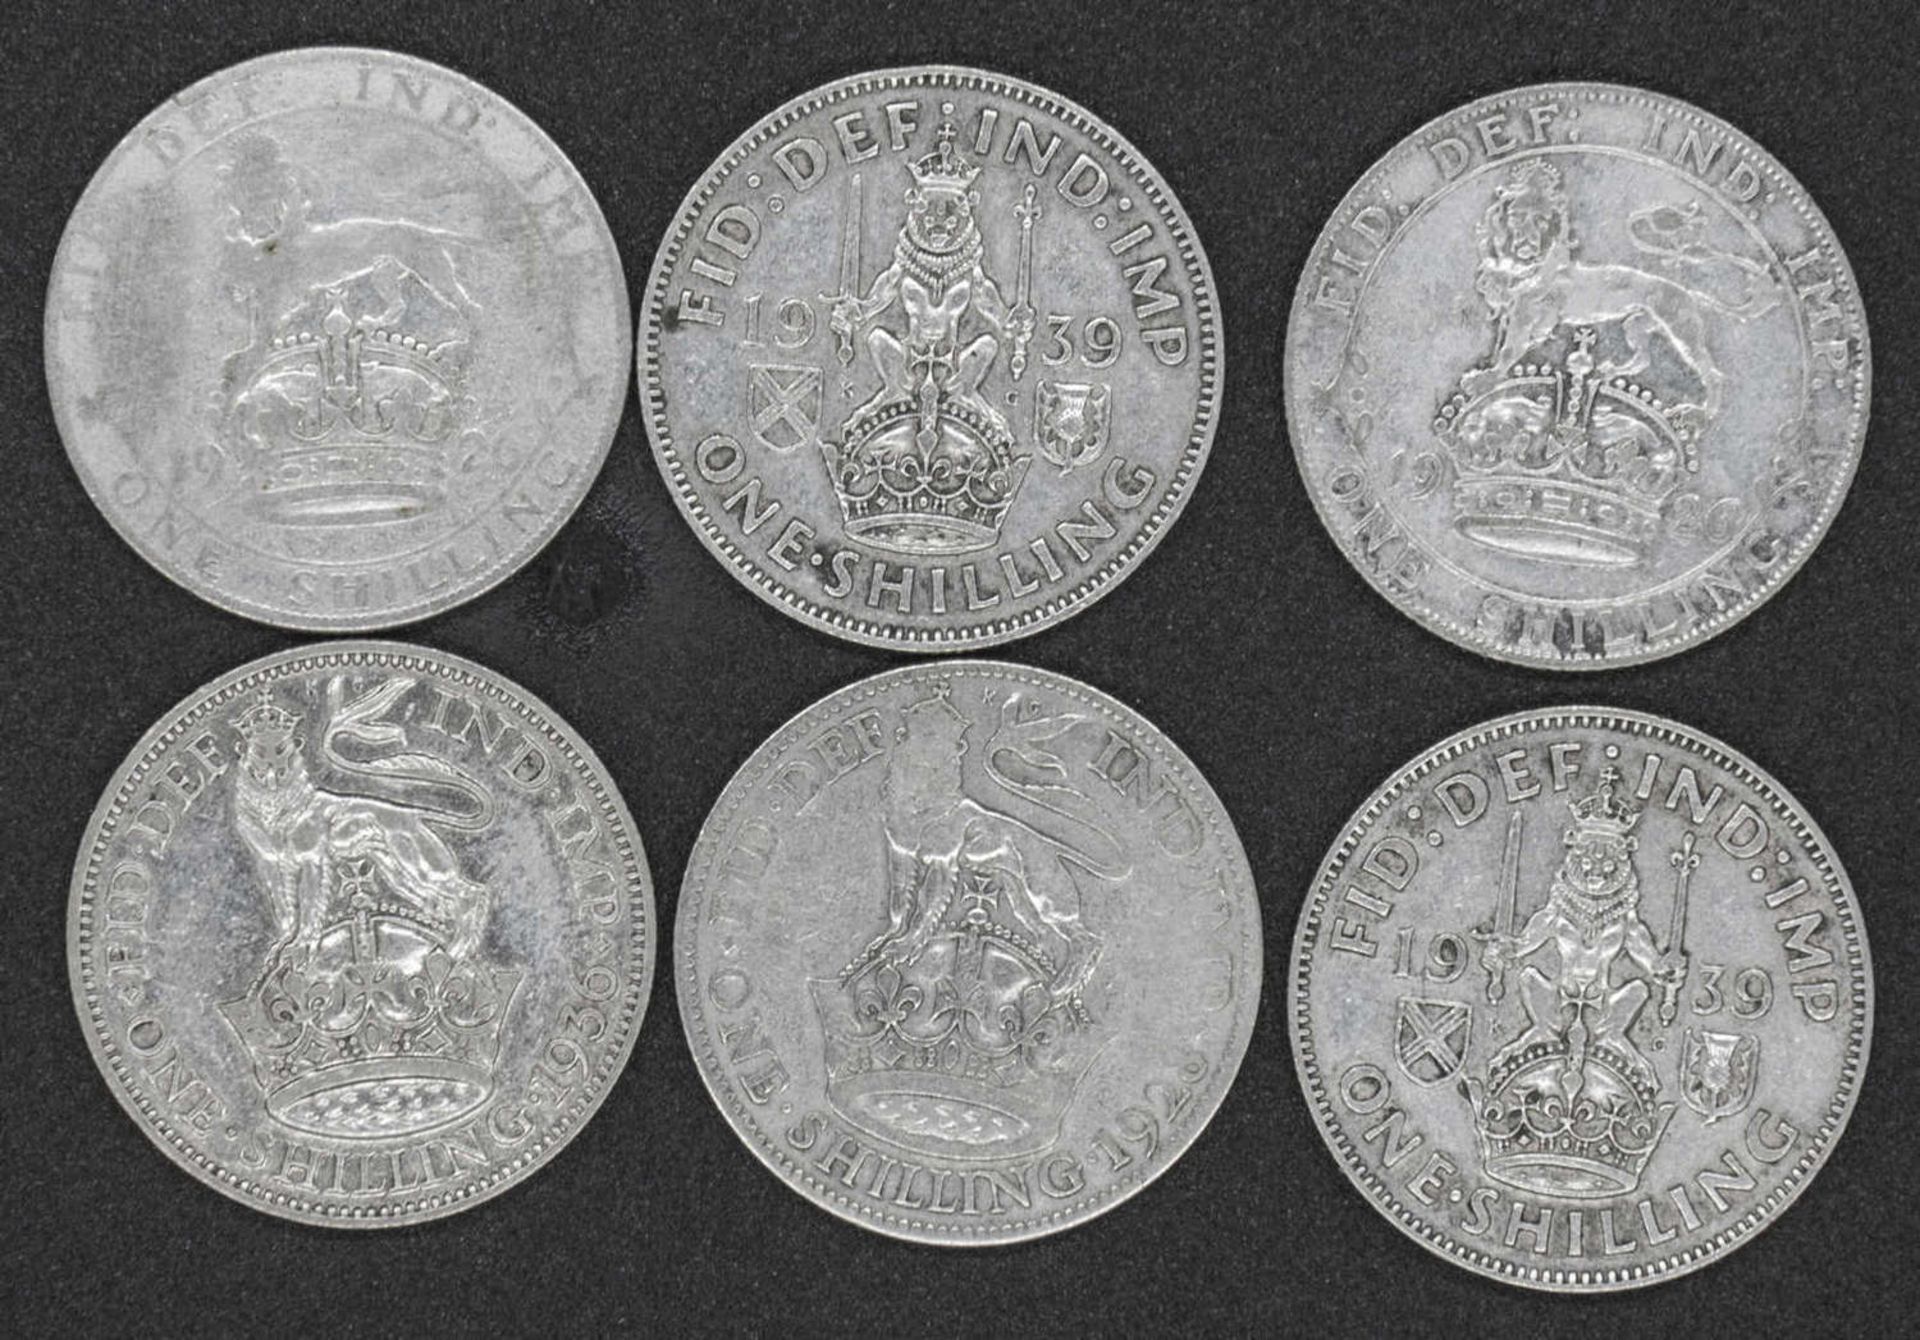 Großbritannien 1926/39, 6 x 1 Shilling - Silbermünzen. 2 x 1926, 1928, 1936 (George V.) und 2 x 1939 - Image 2 of 2